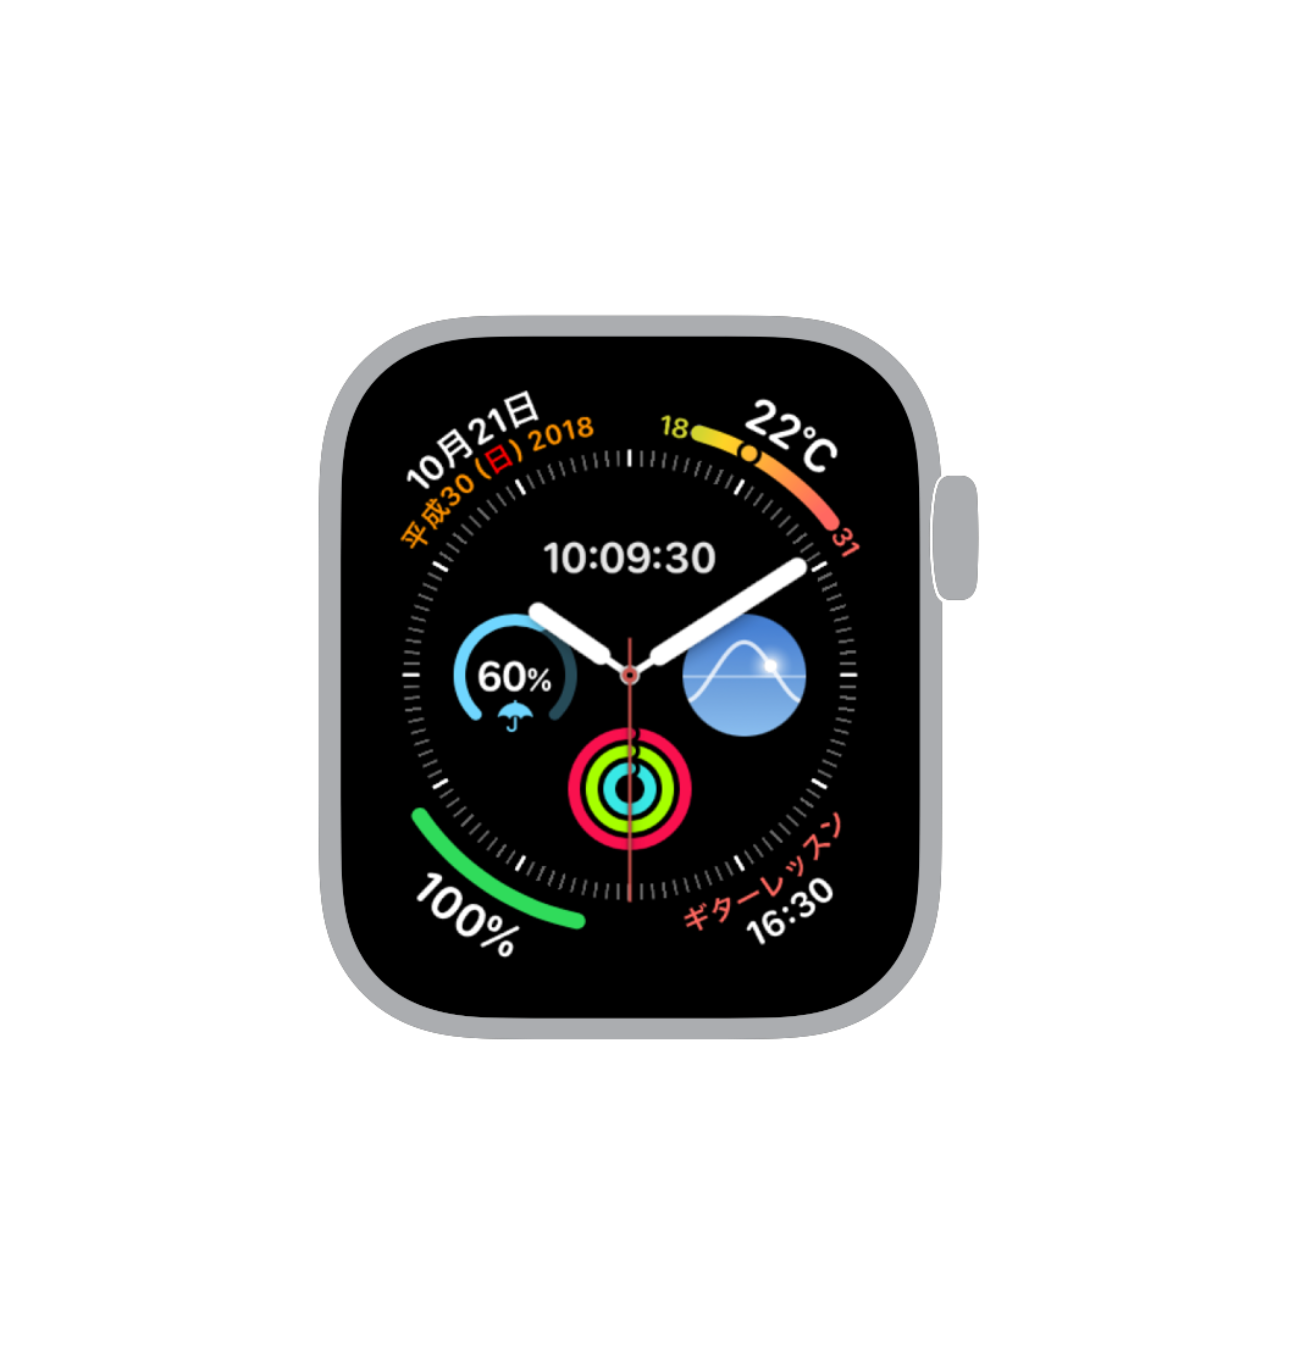 Apple Watch アナログとデジタルを同時に表示できる文字盤3選